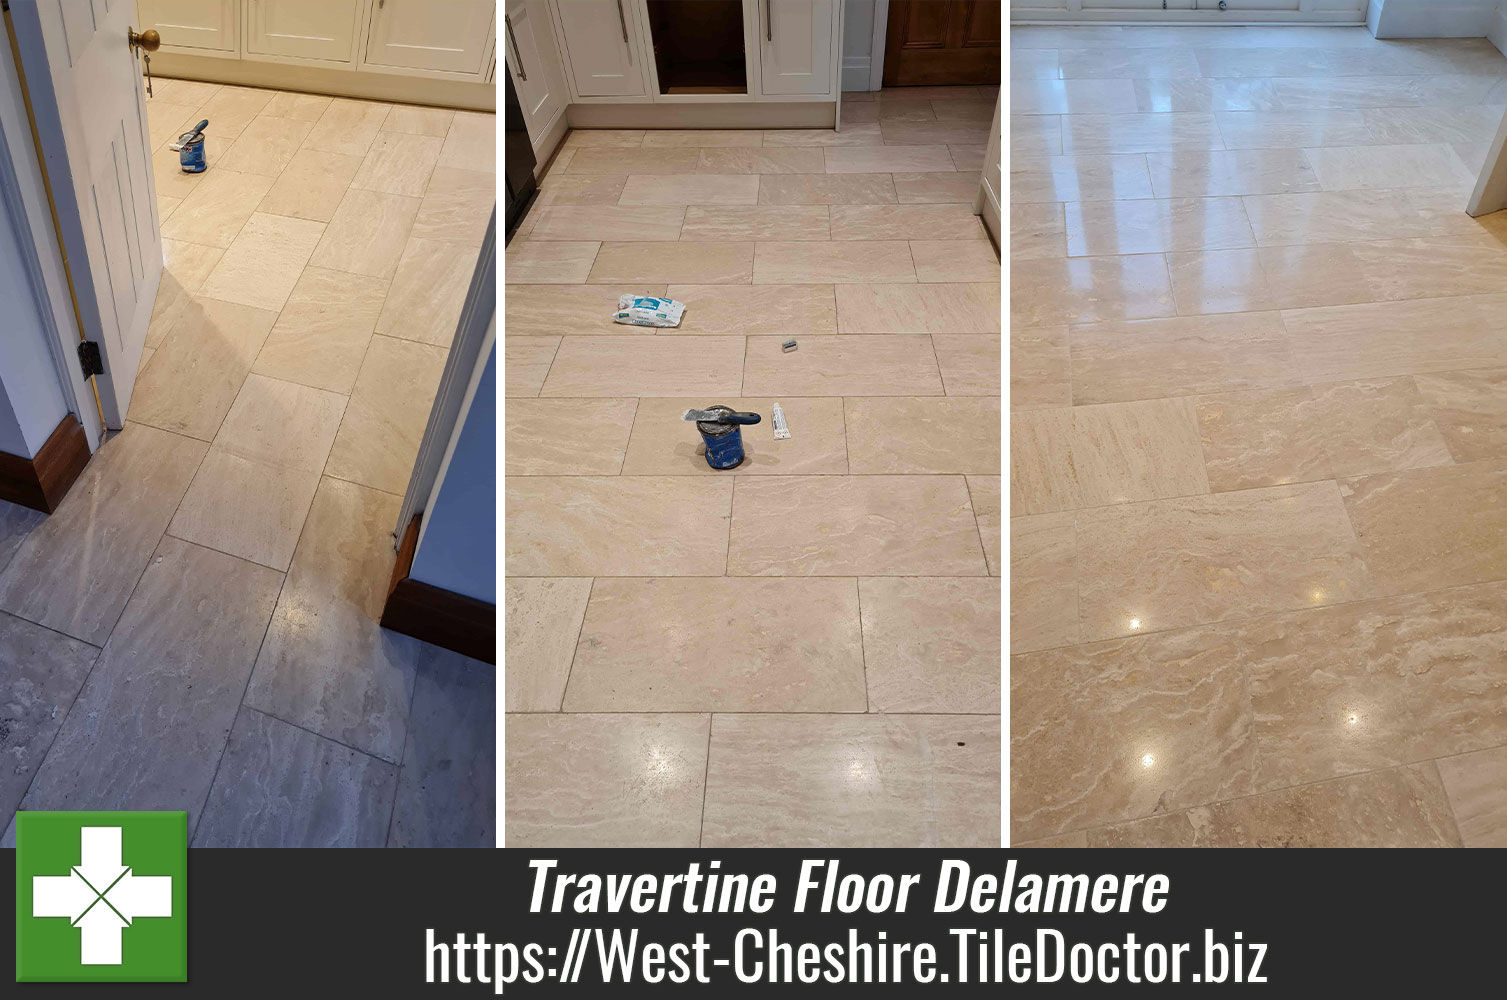 Travertine-Tiled-Kitchen-Floor-Before-After-Polishing-Delamere